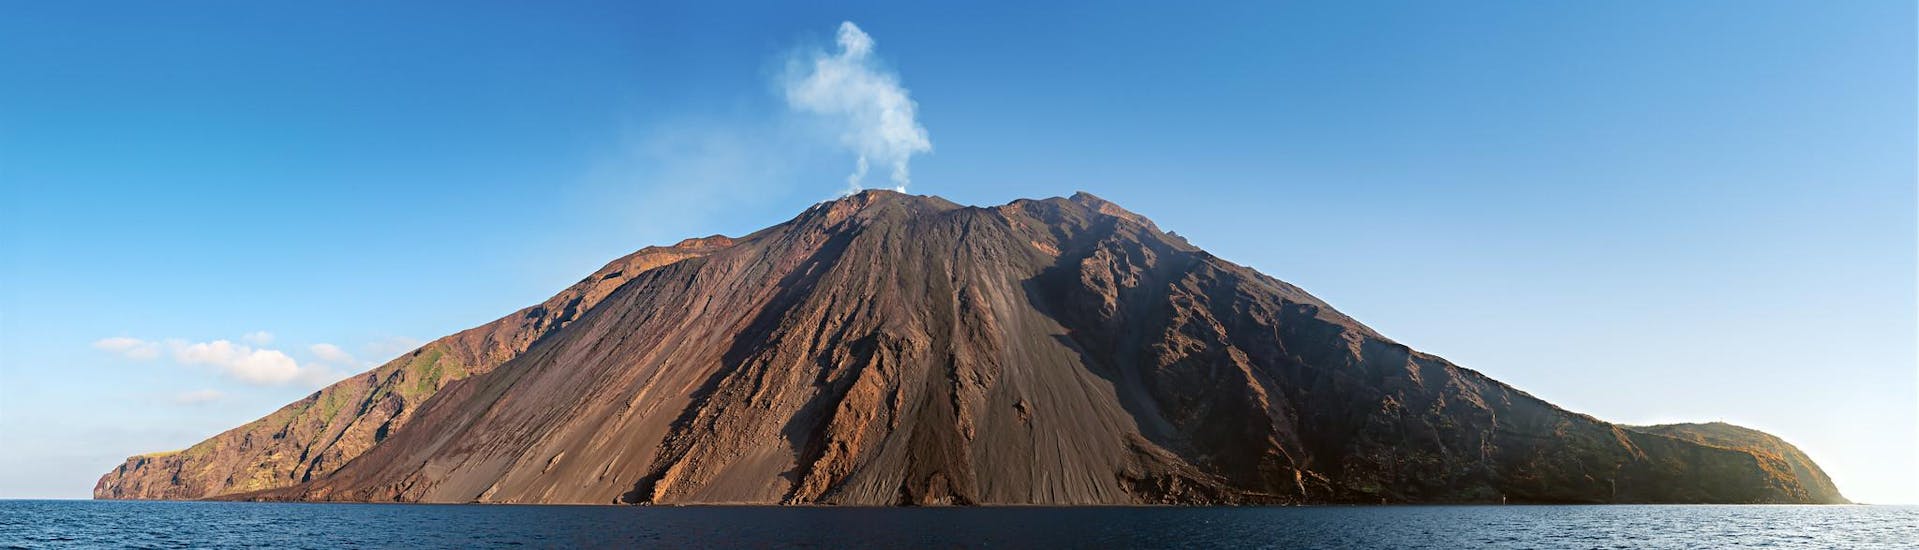 Haz una excursion al volcán o disfruta escalando el volcan hasta la final